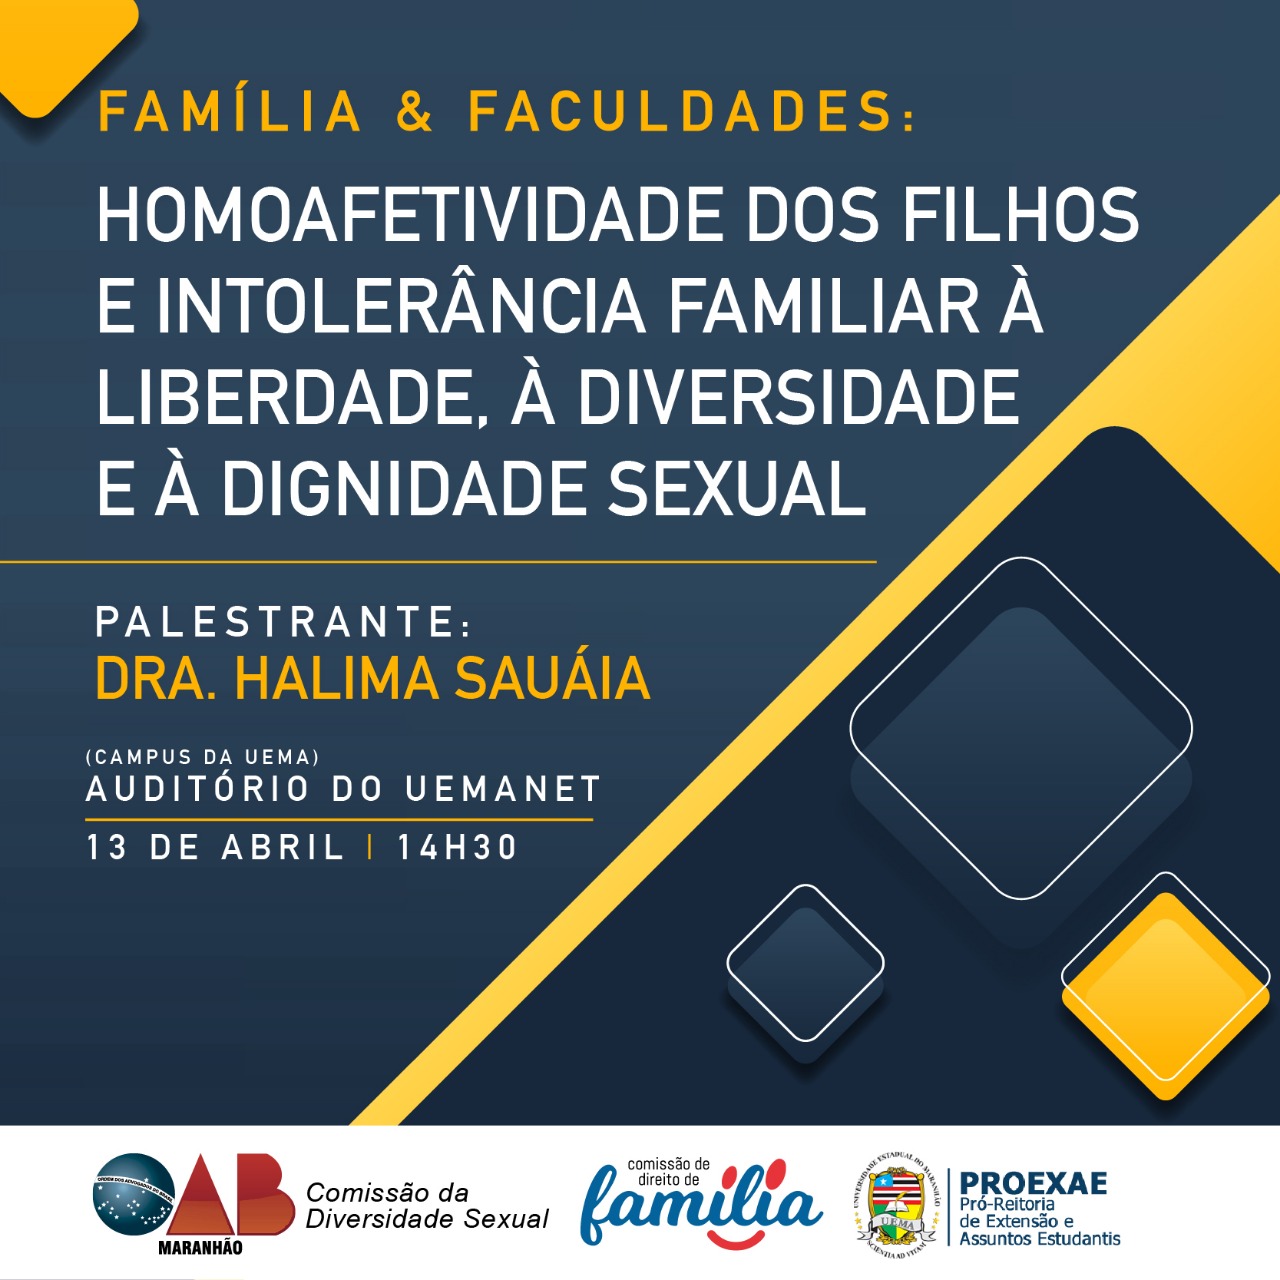 Palestra sobre homoafetividade e intolerância familiar será realizada nesta sexta-feira